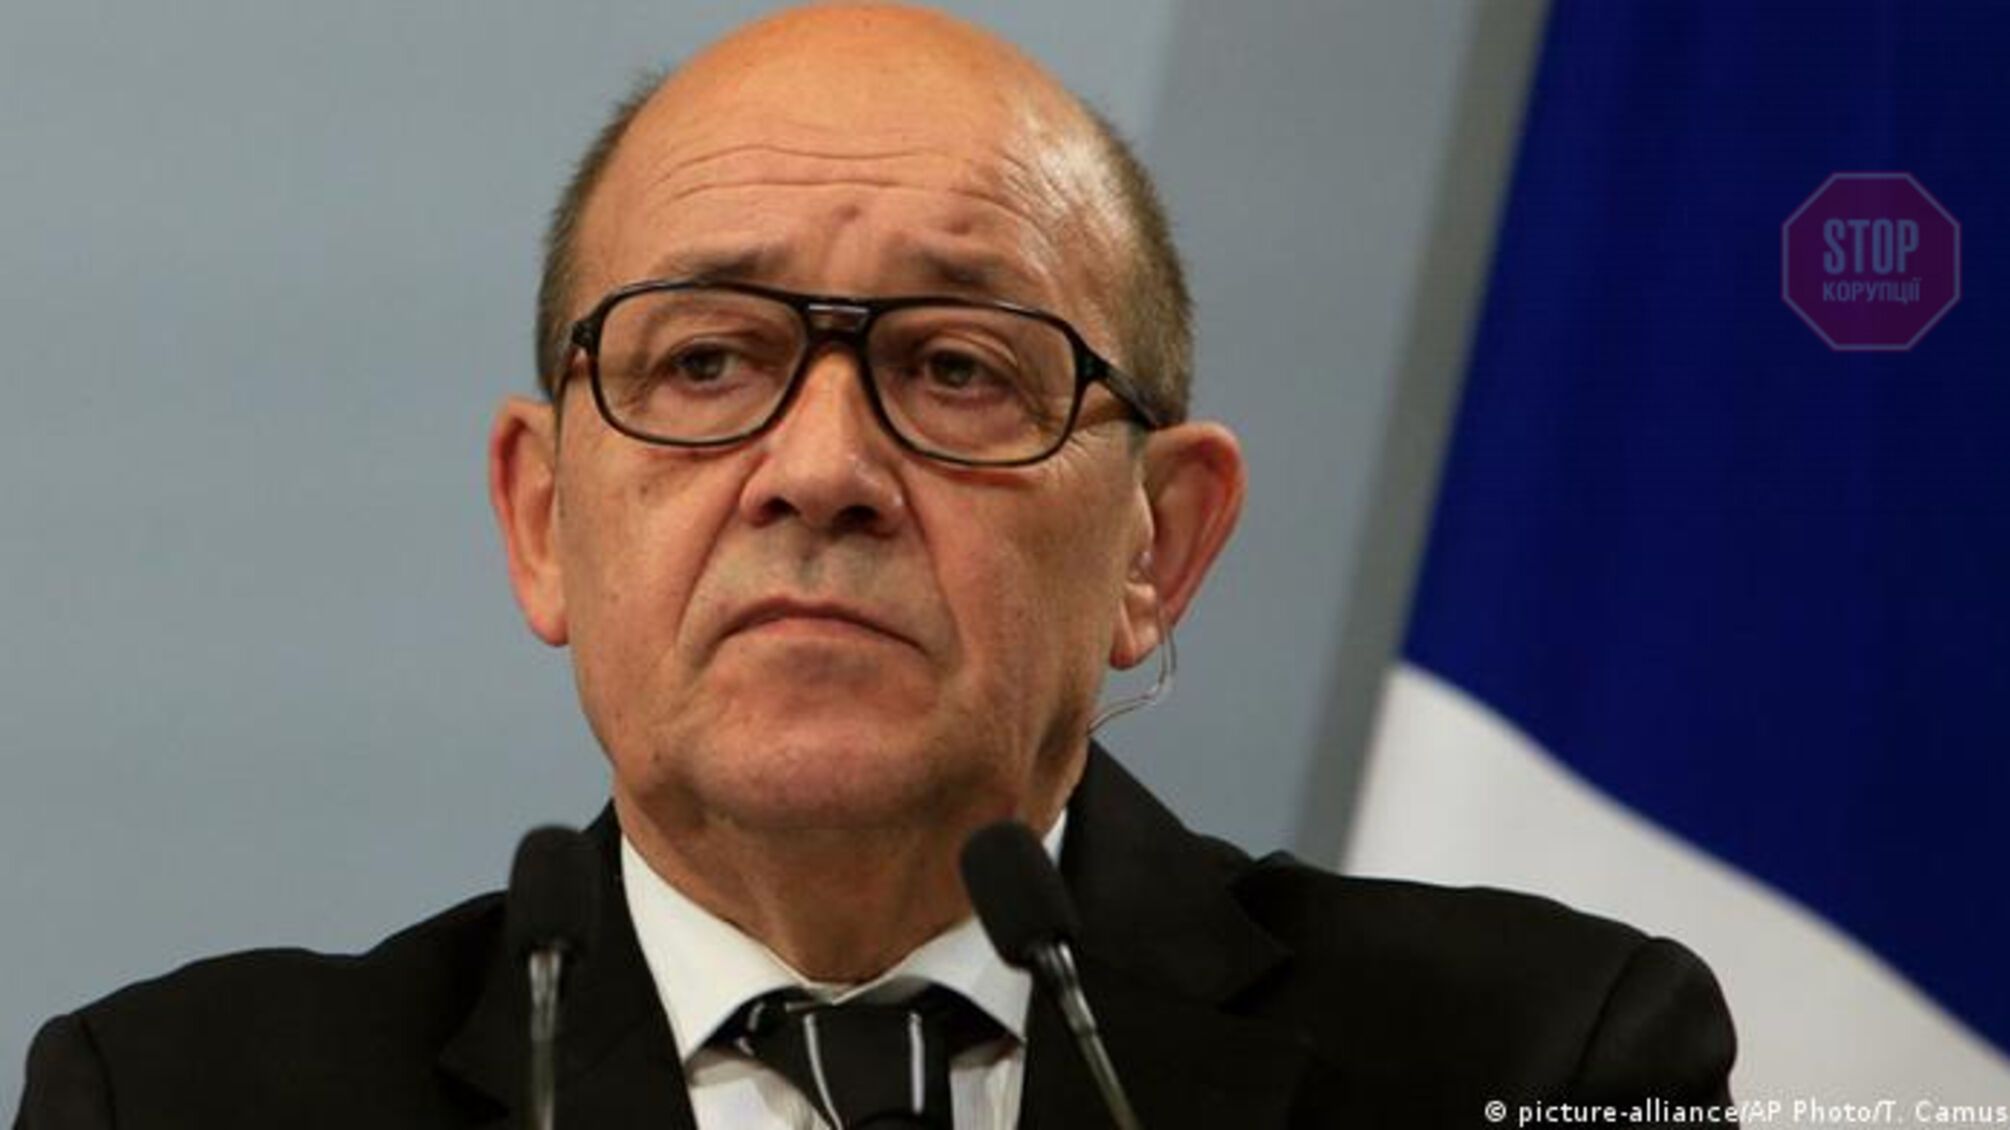 МИД Франции: «Мы должны продолжать диалог с путиным»